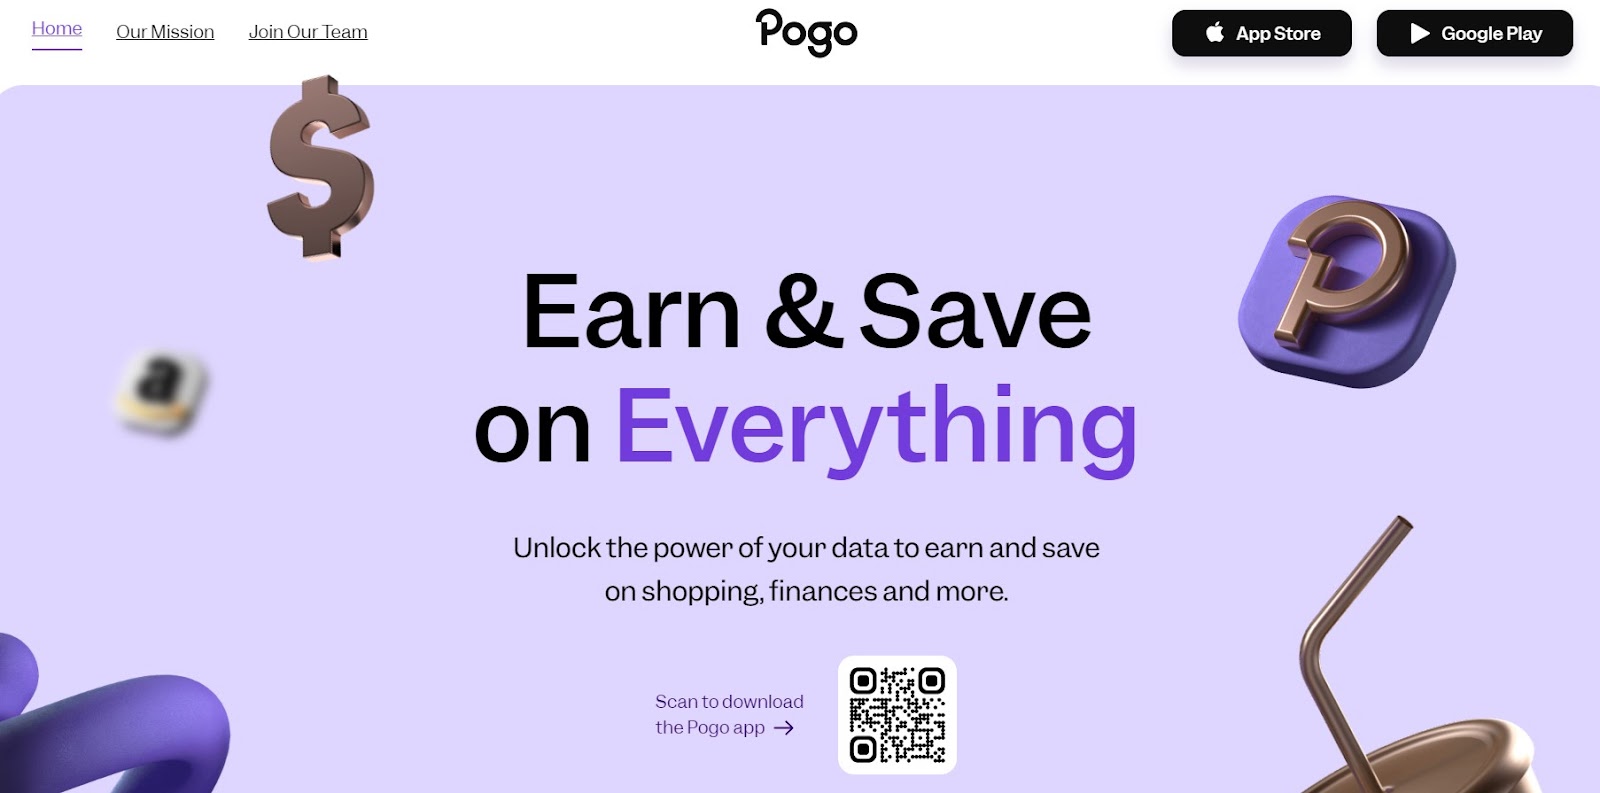 Pogo App review - homepage screenshot